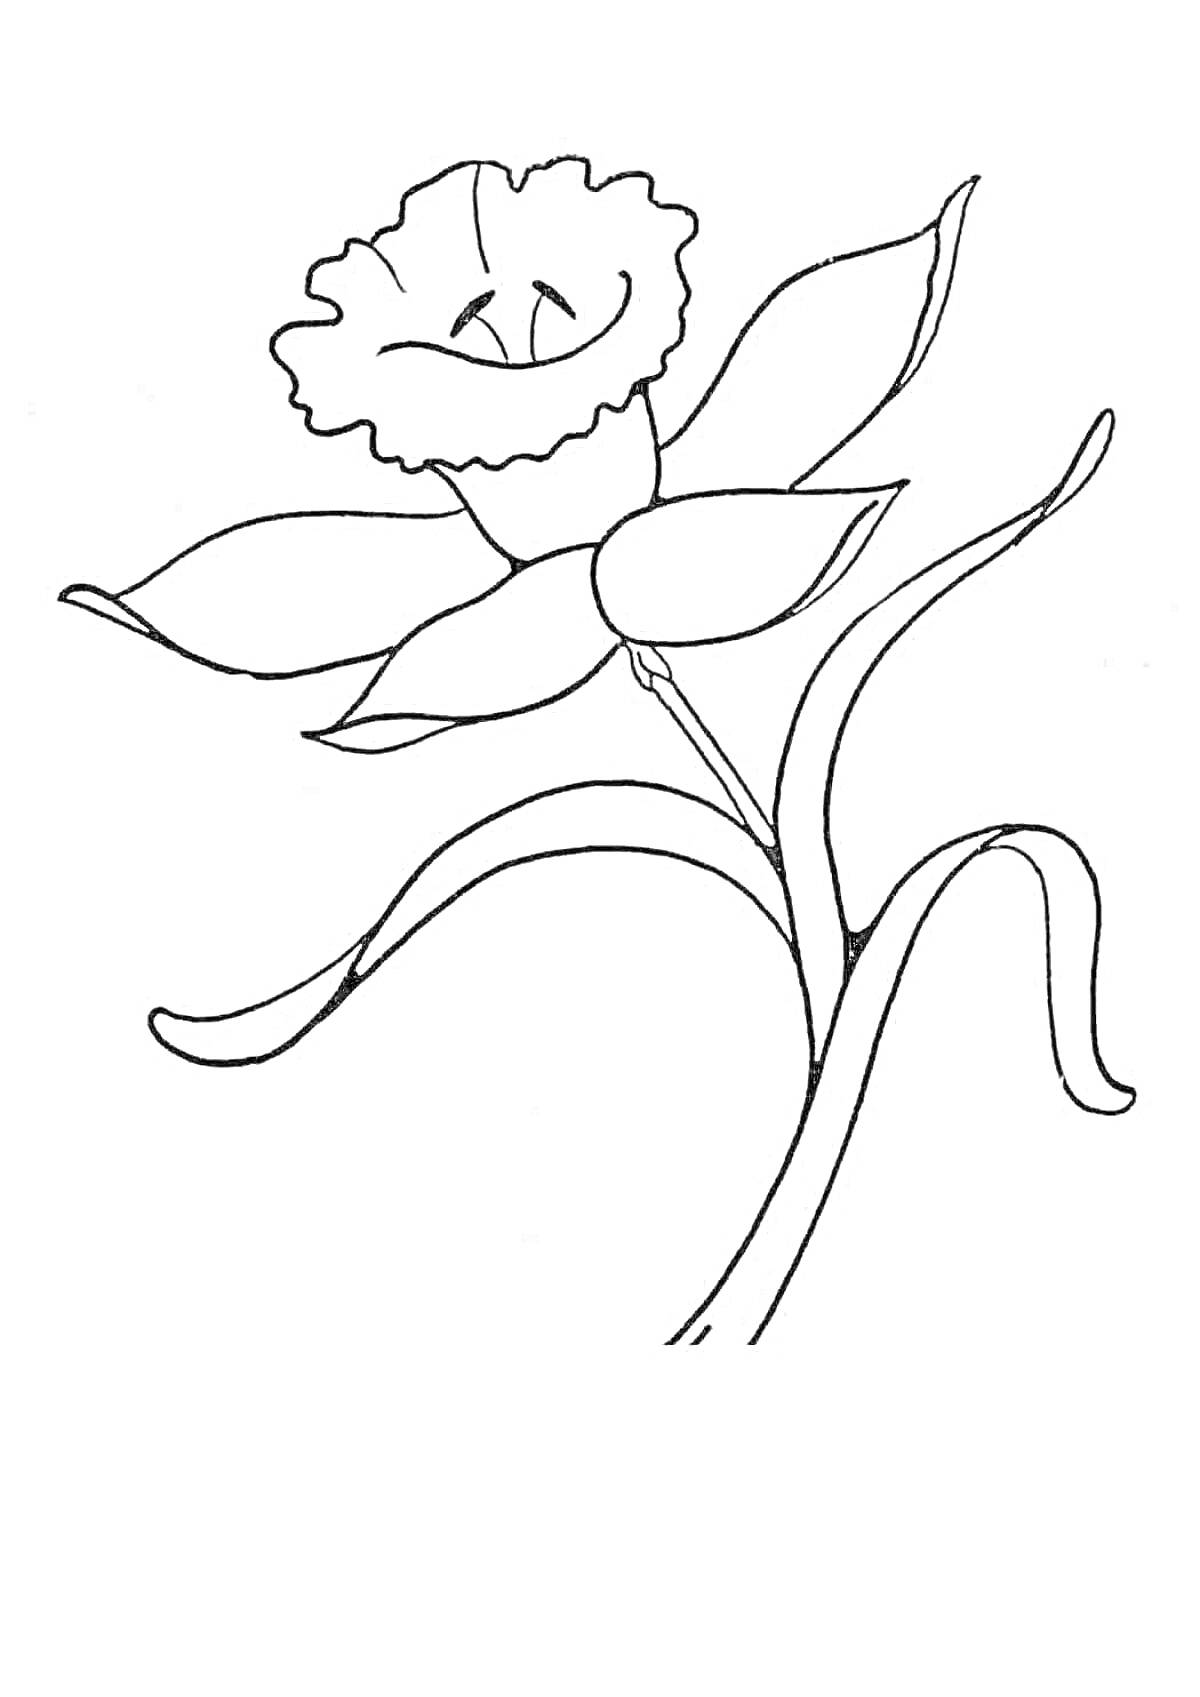 Раскраска Раскраска с изображением неизвестного цветка с пятью лепестками, волнистым краем верхнего лепестка, большими листьями и стеблем